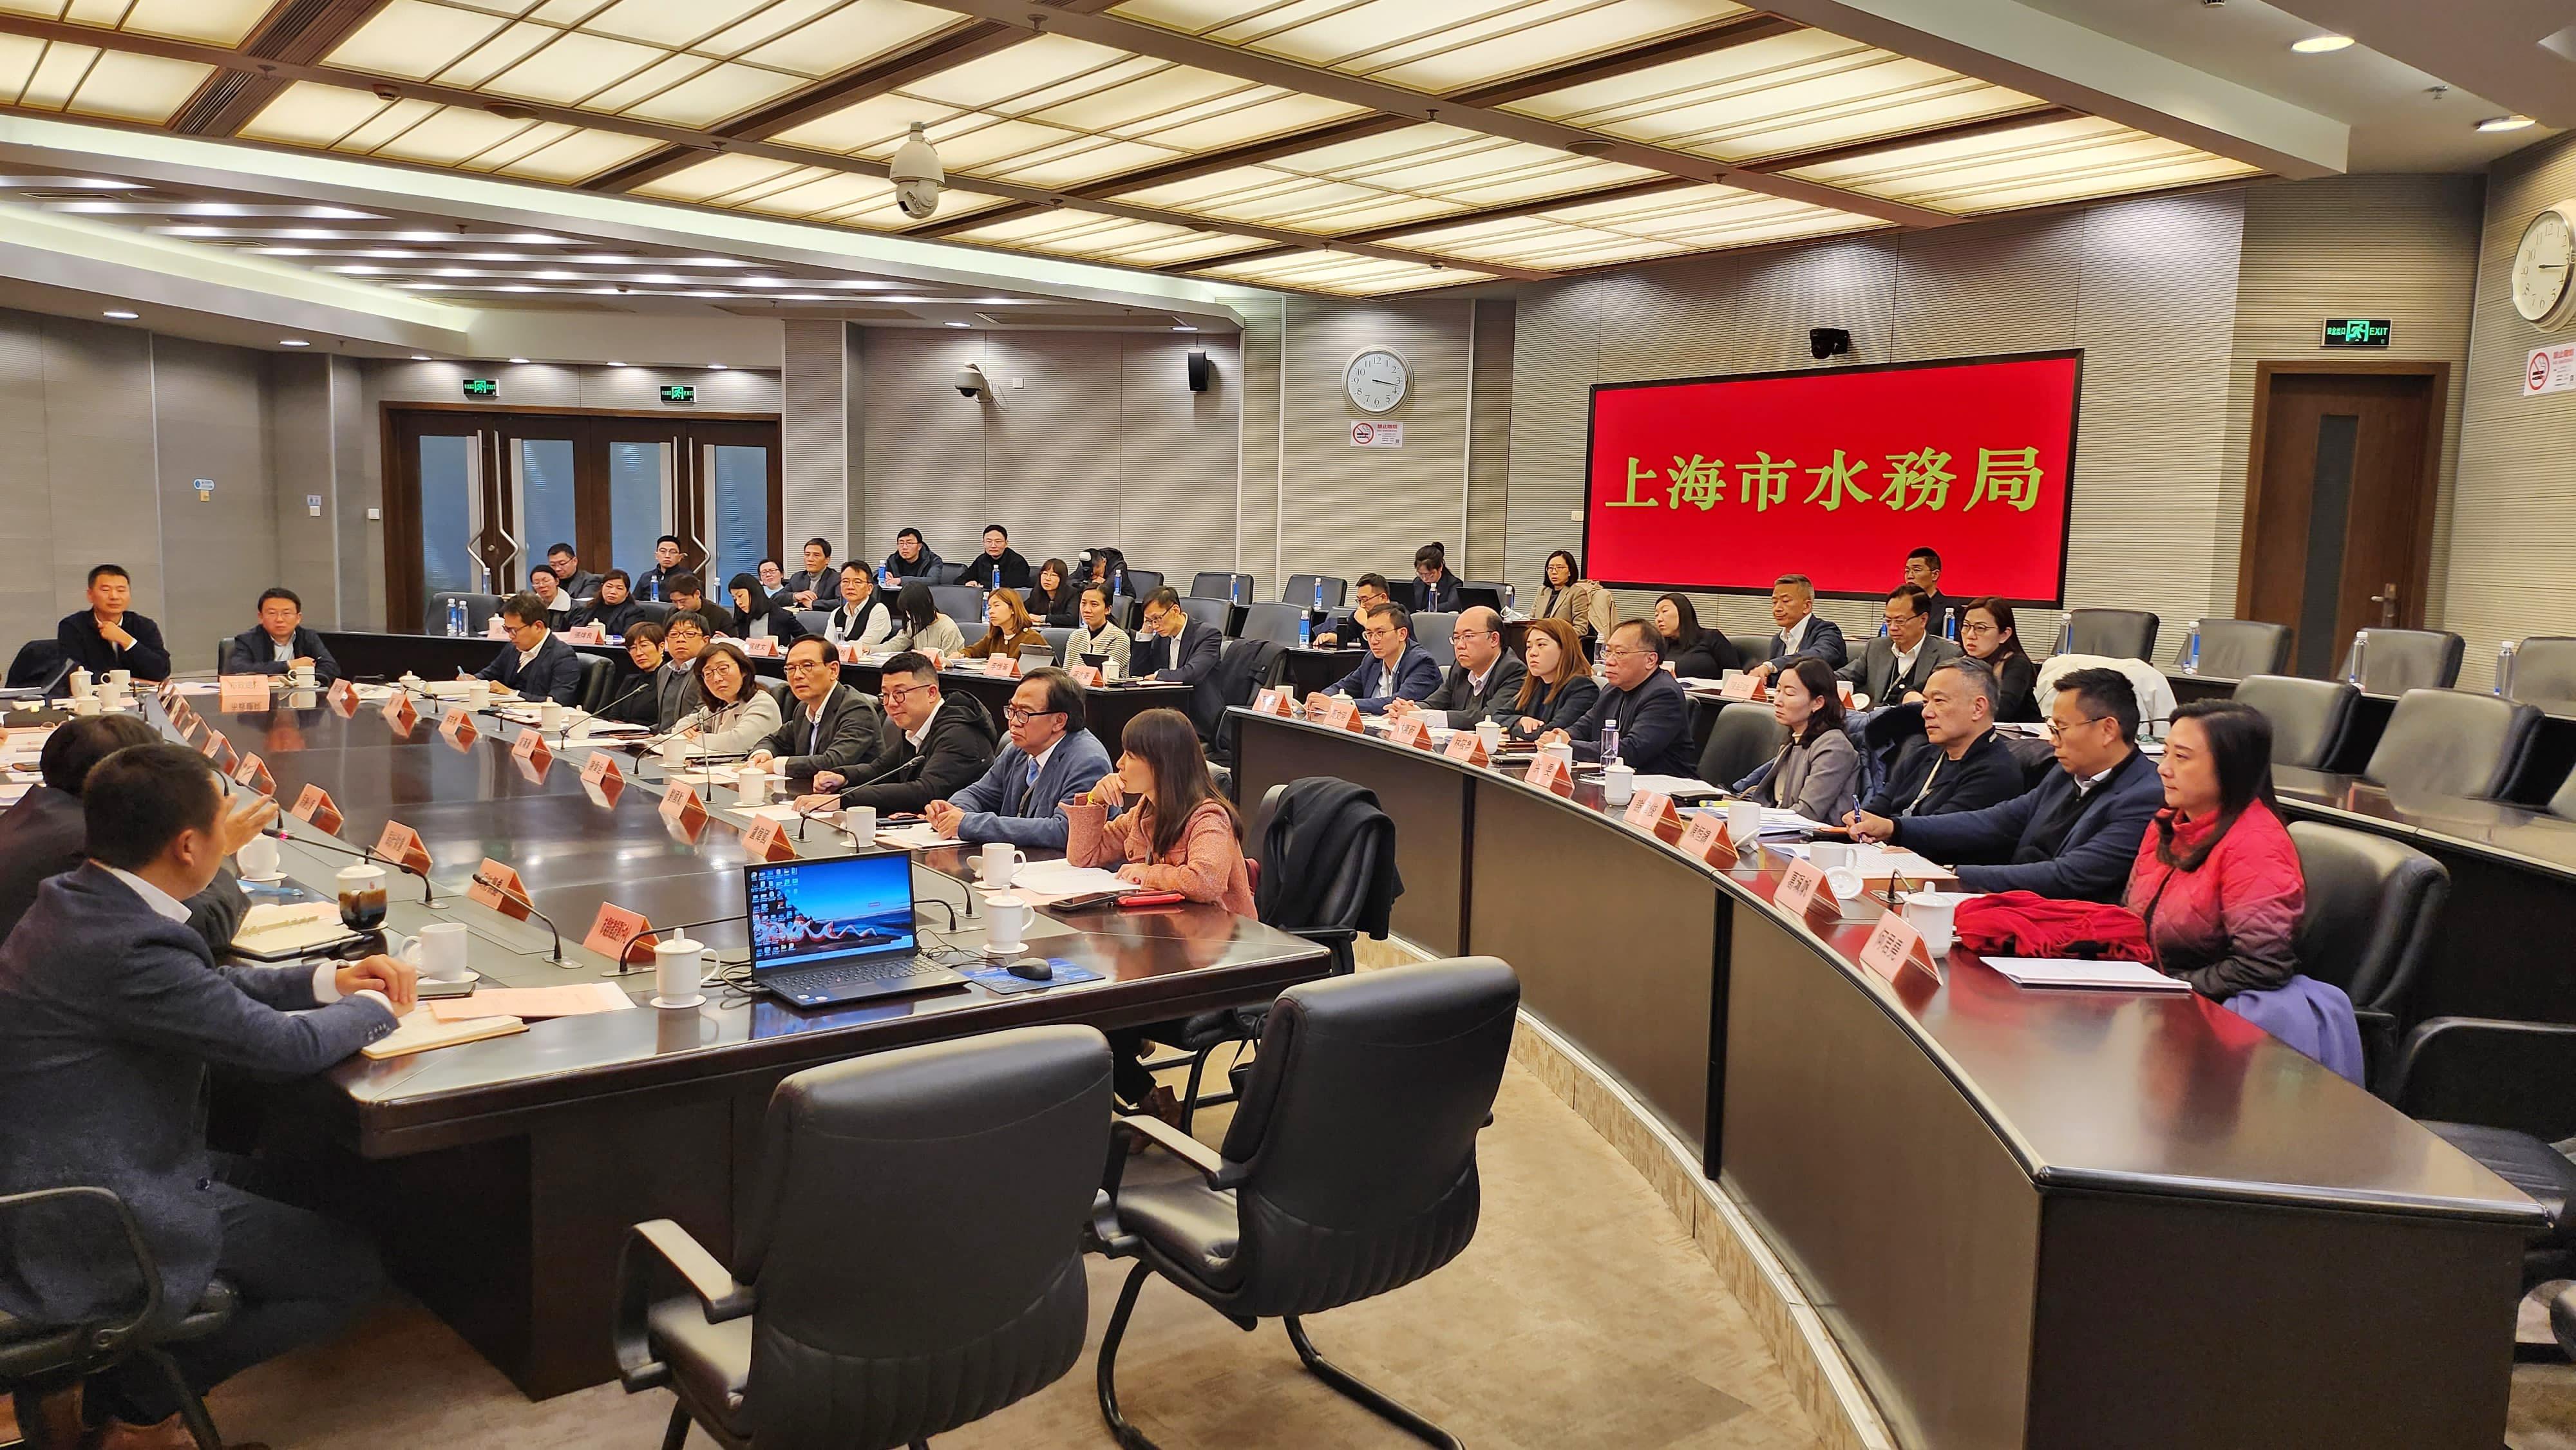 立法会发展事务委员会代表团（代表团）今日（十二月十九日）展开为期三天的上海职务考察。图示代表团与上海市水务局的代表会面交流。